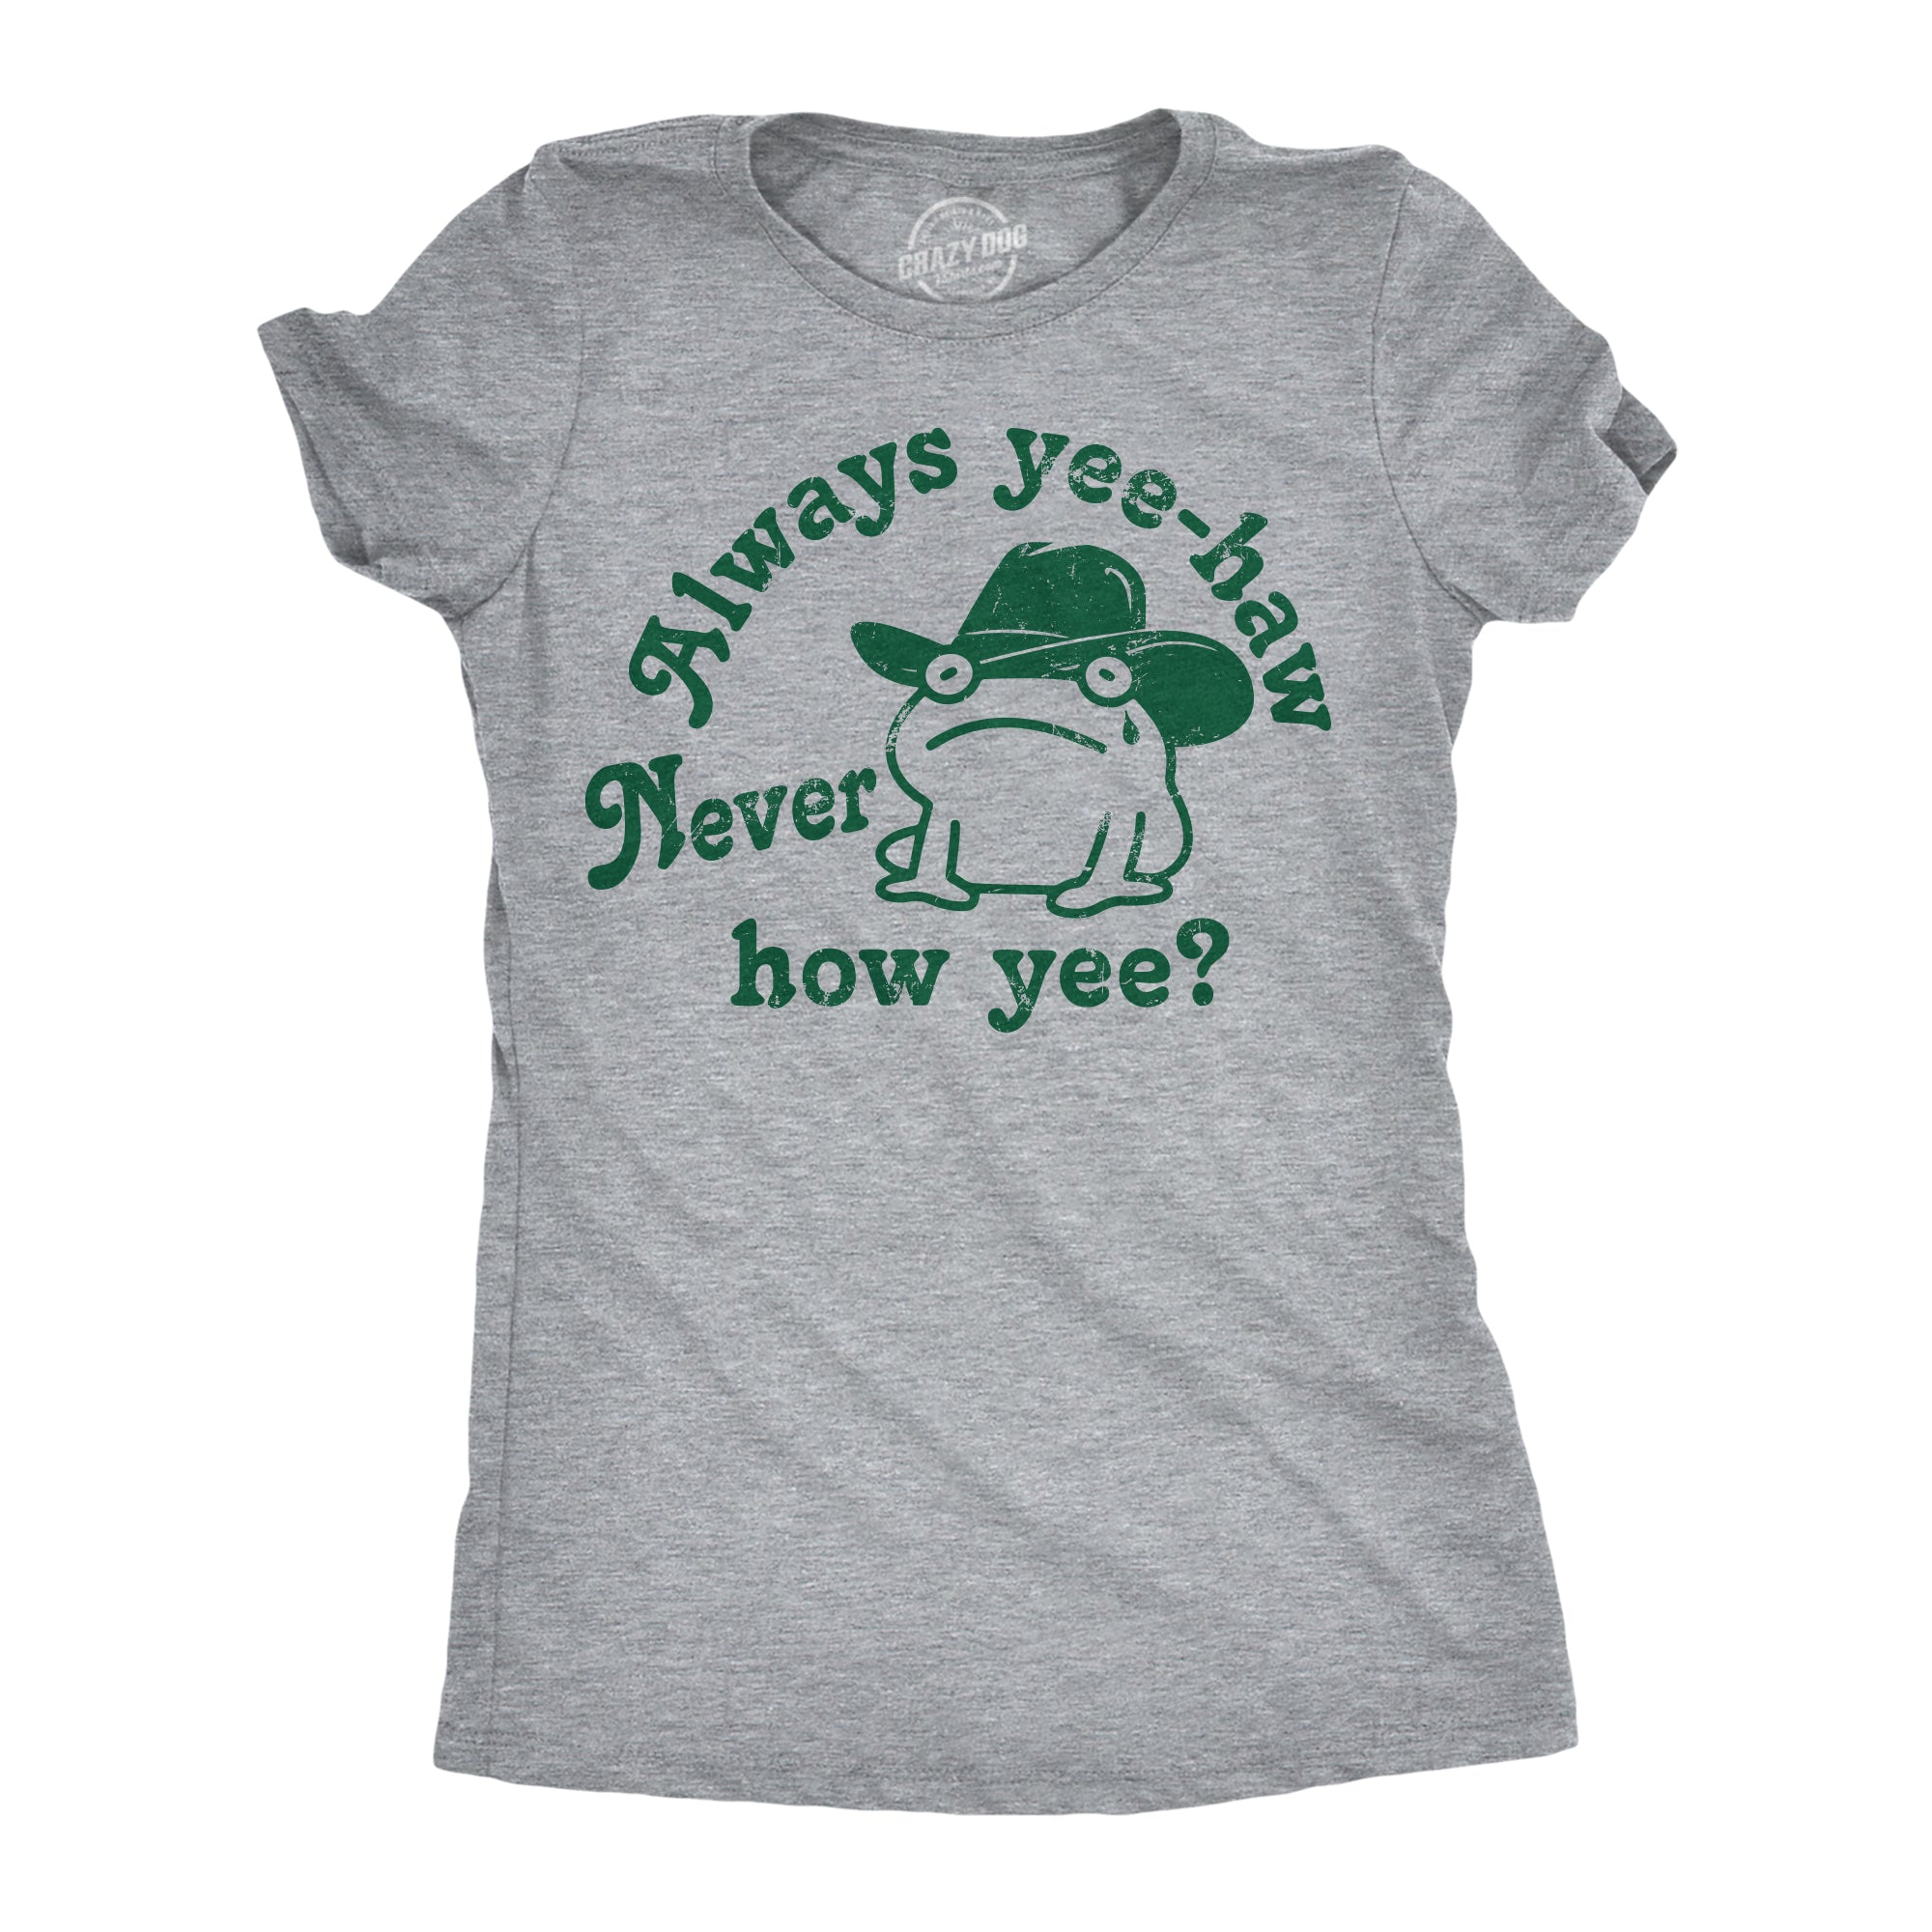 Funny Light Heather Grey - Always Yee Haw Always Yee Haw Never How Yee Womens T Shirt Nerdy sarcastic Tee